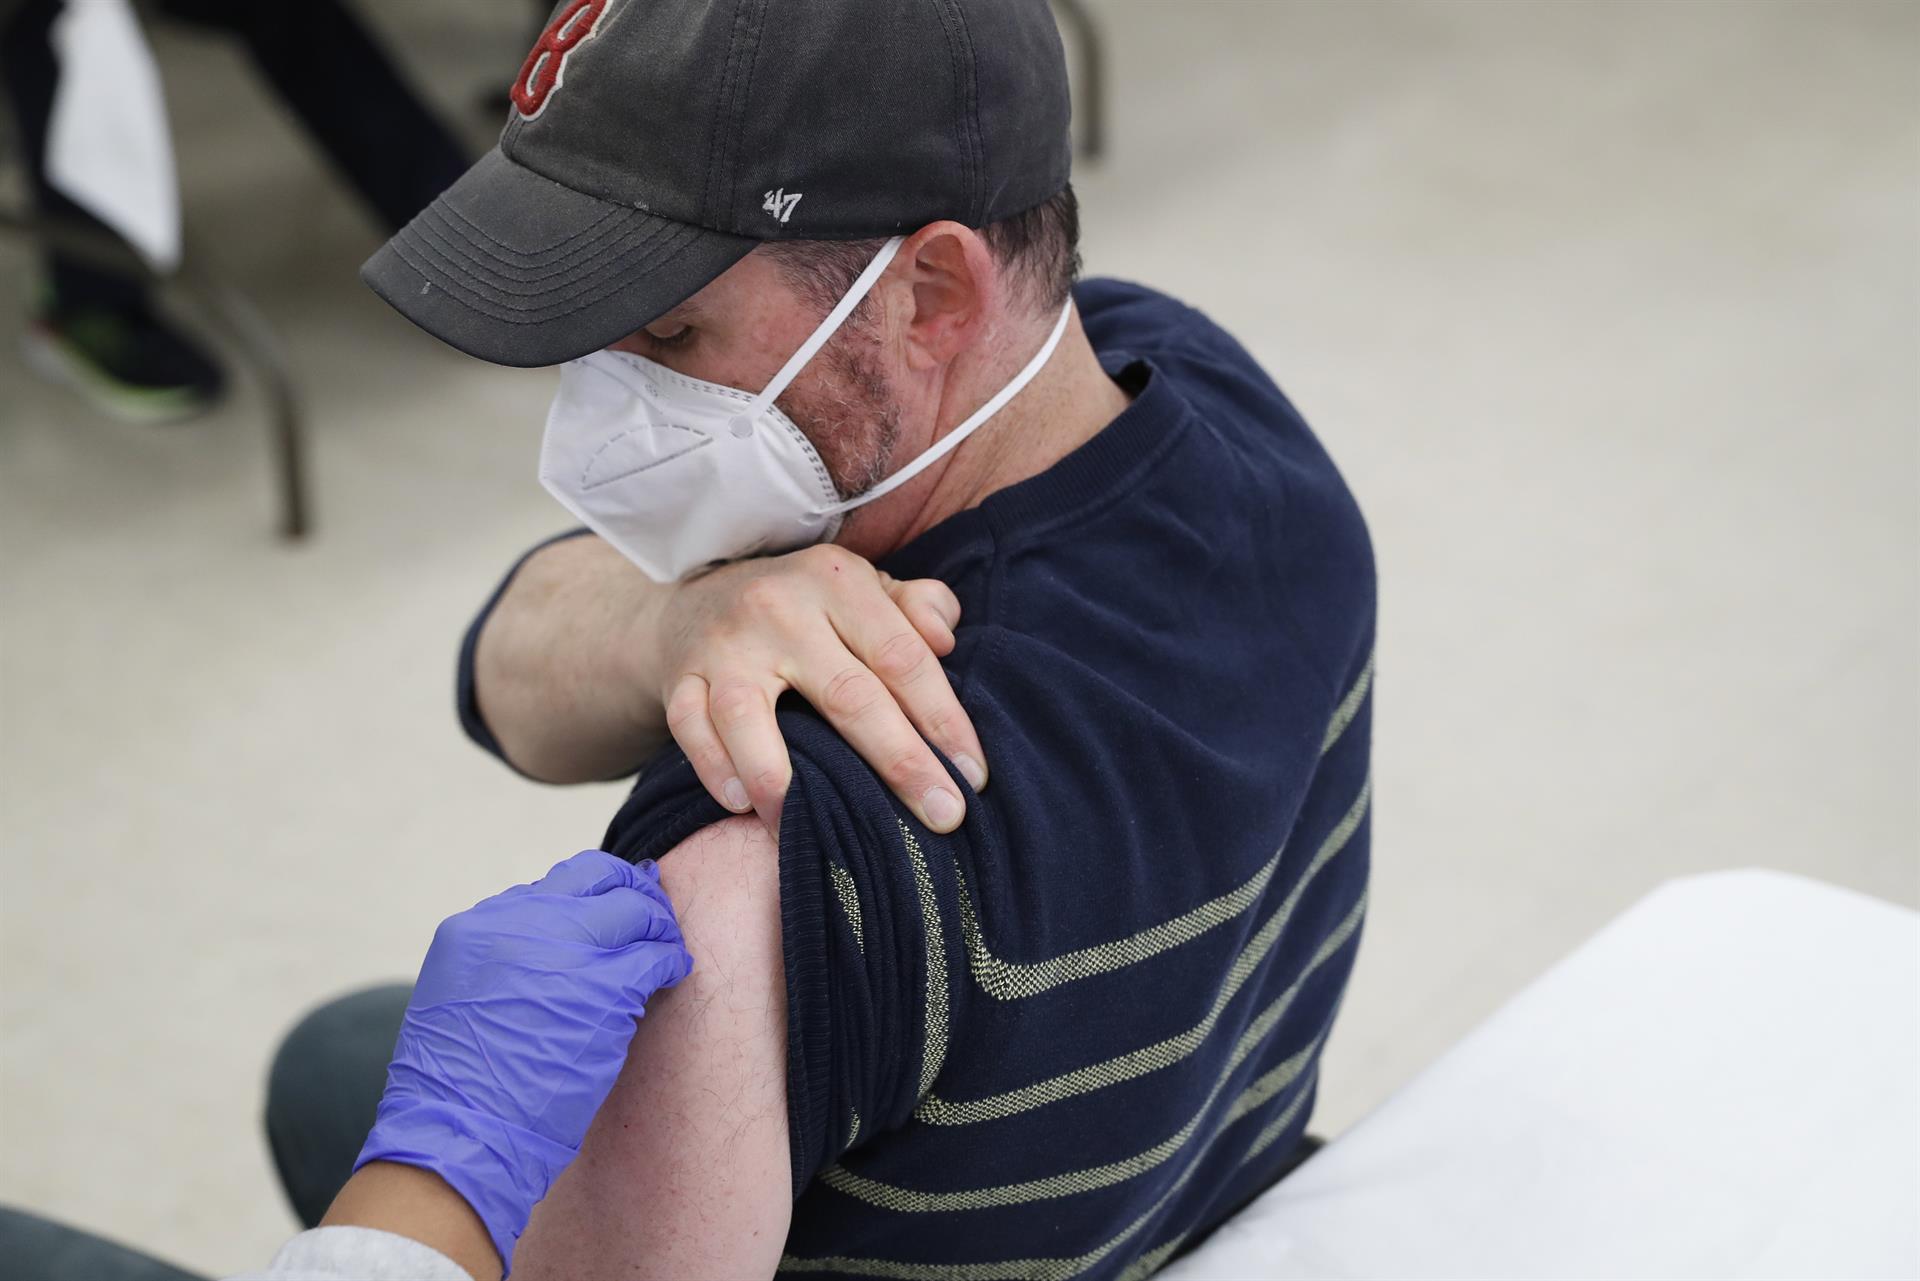 Estados Unidos urge a ponerse el refuerzo de la vacuna covid ante aumento de hospitalizaciones